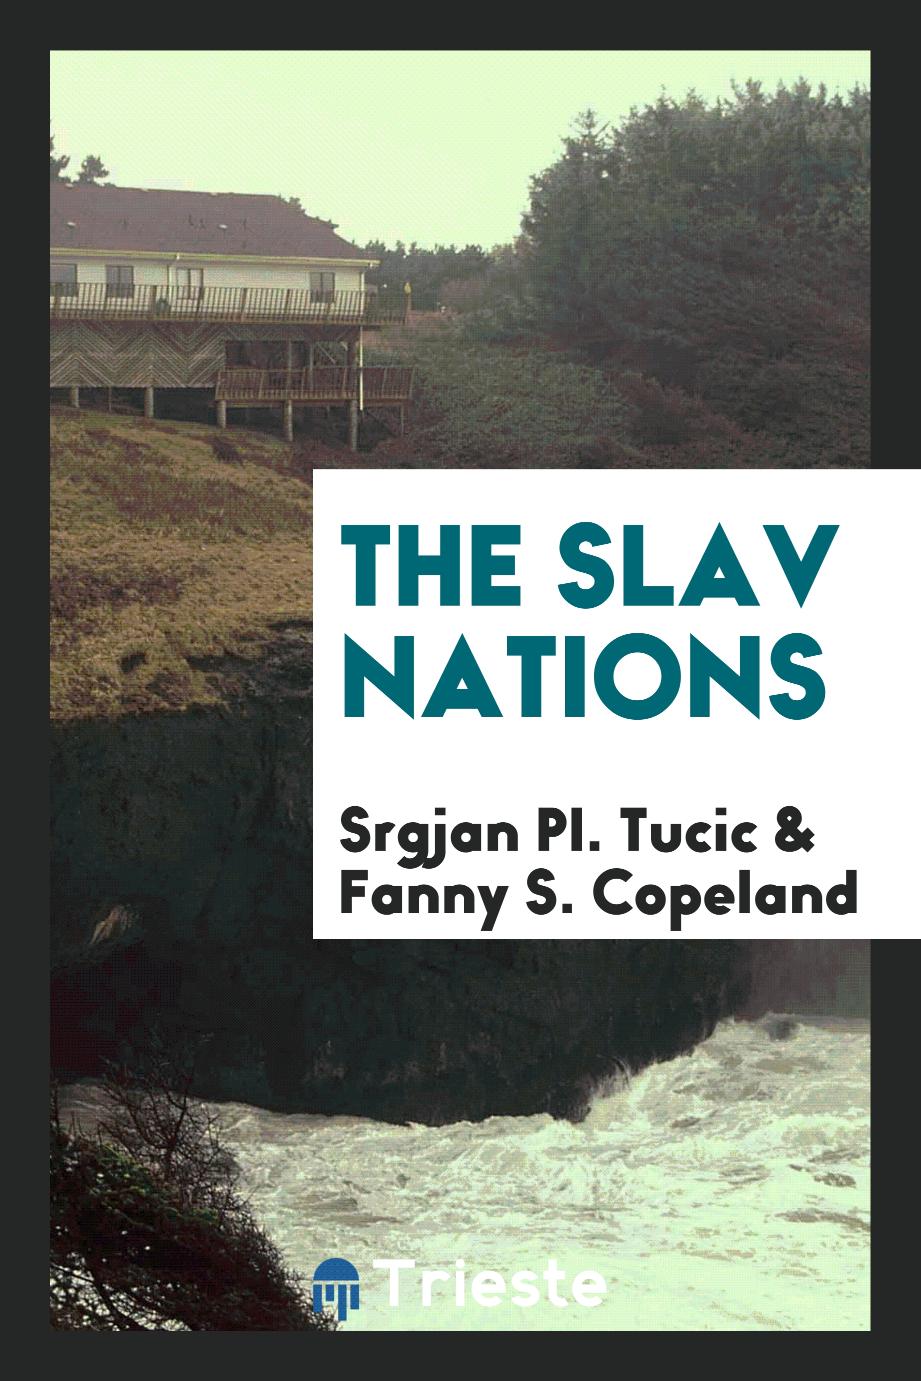 The Slav nations